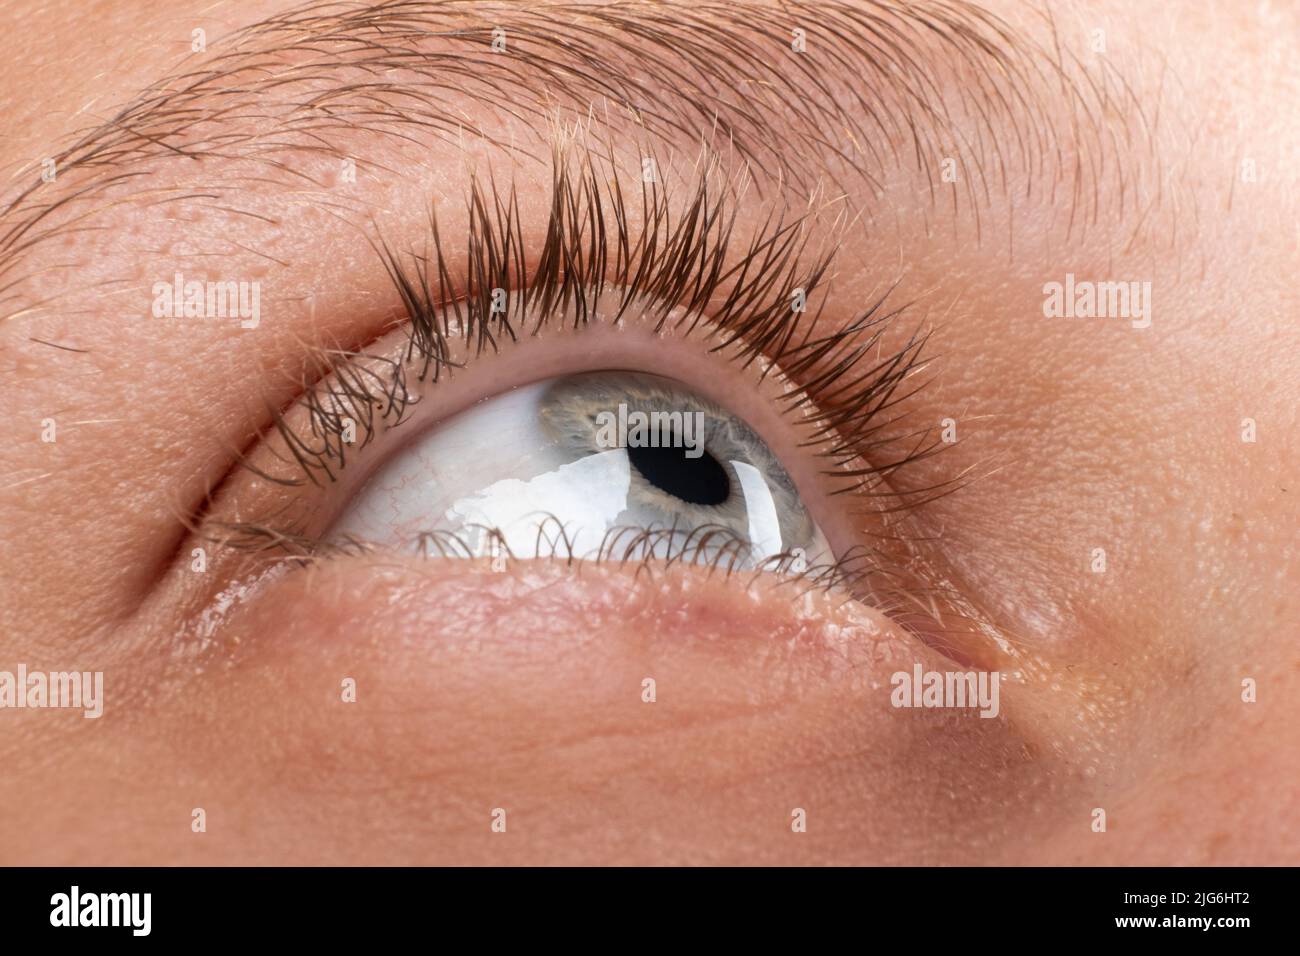 Weibliches Auge mit Keratokonus kornealer Verdünnung diagnostiziert. Stockfoto